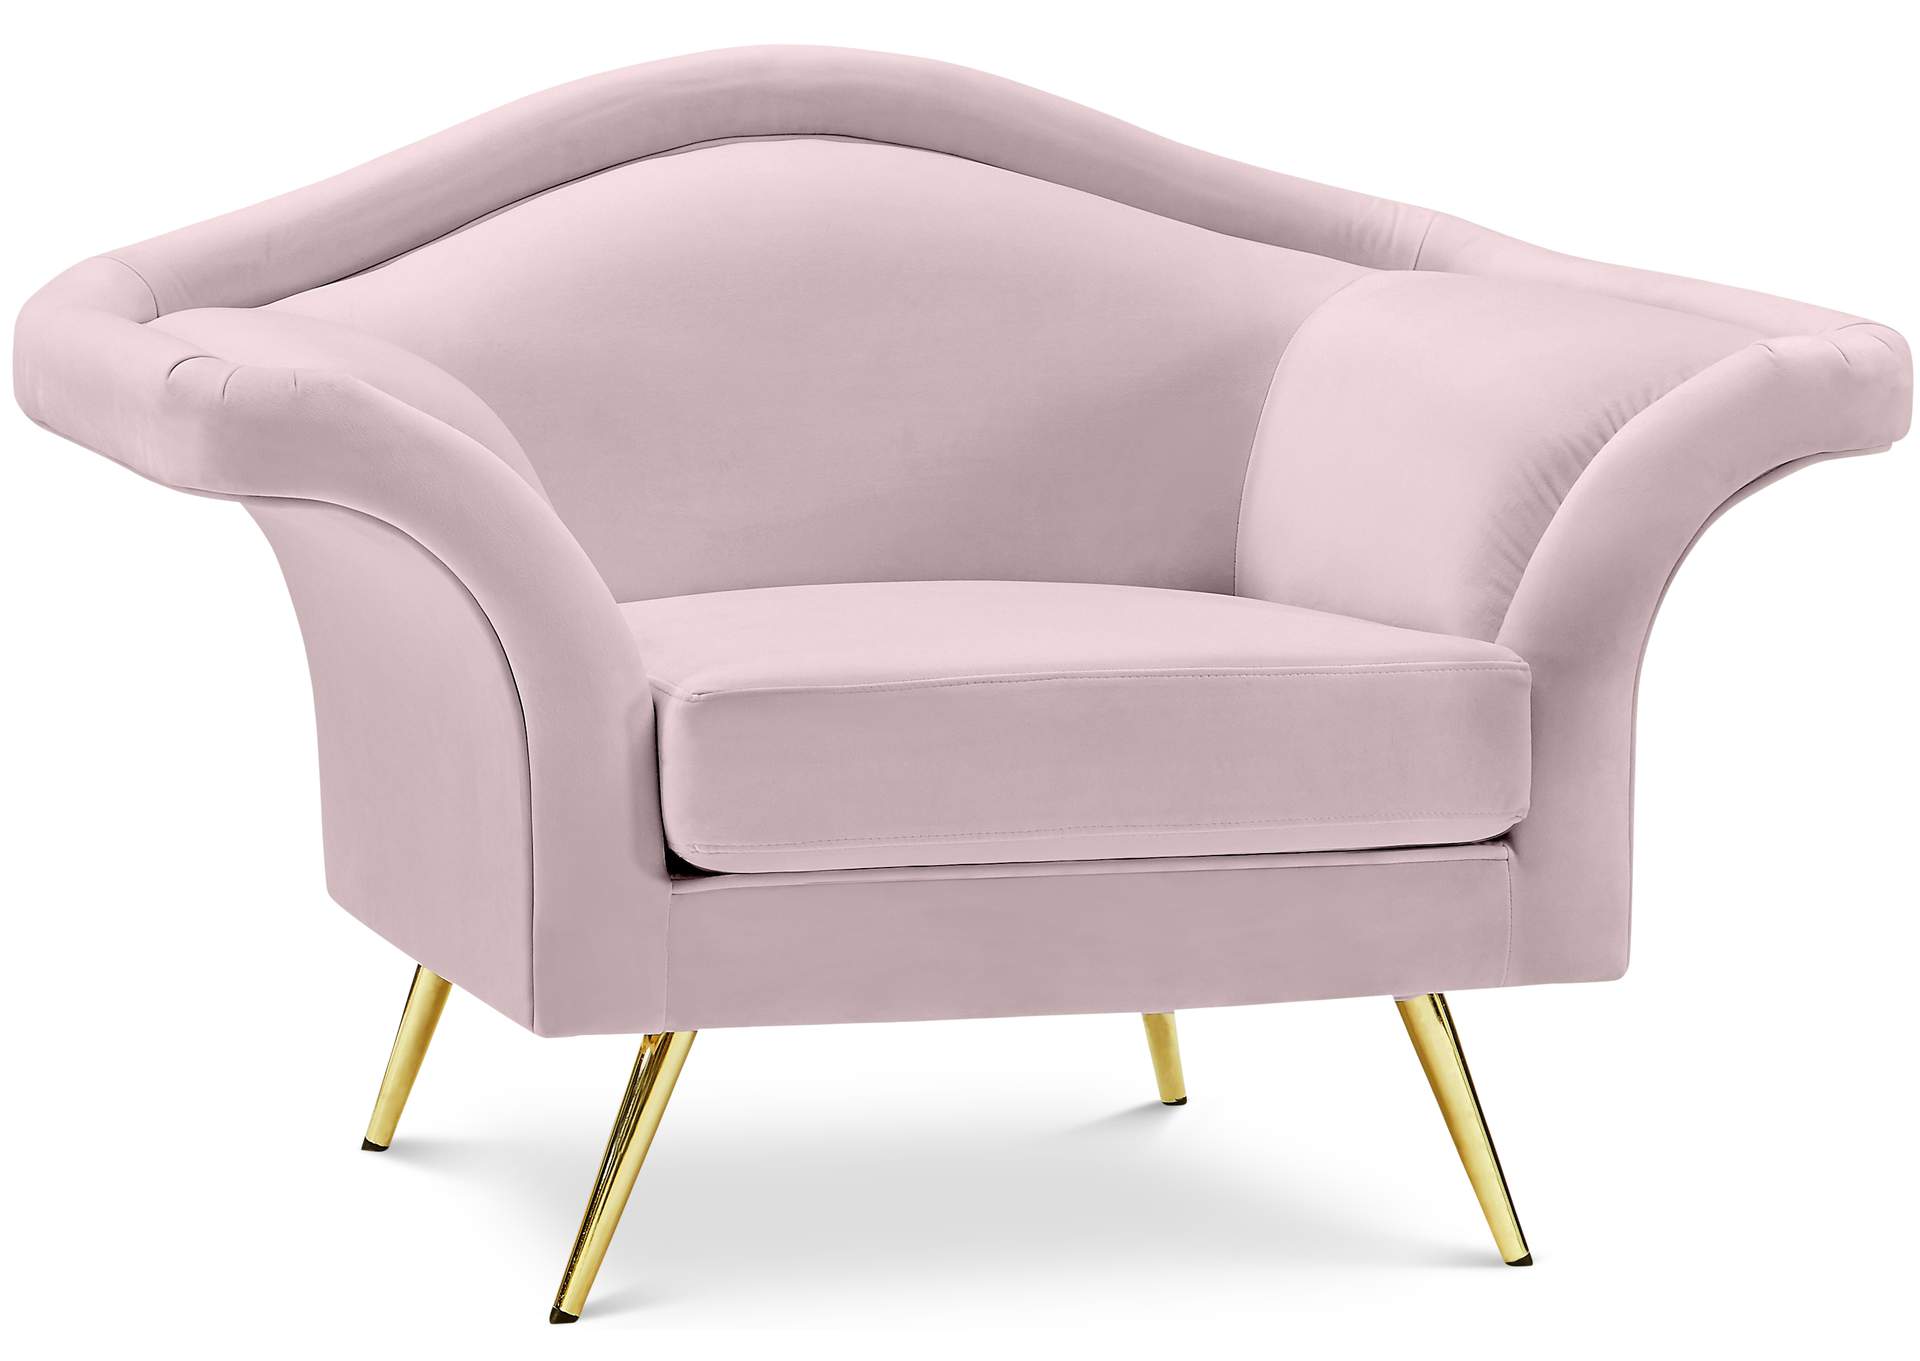 Lips Pink Velvet Chair,Meridian Furniture